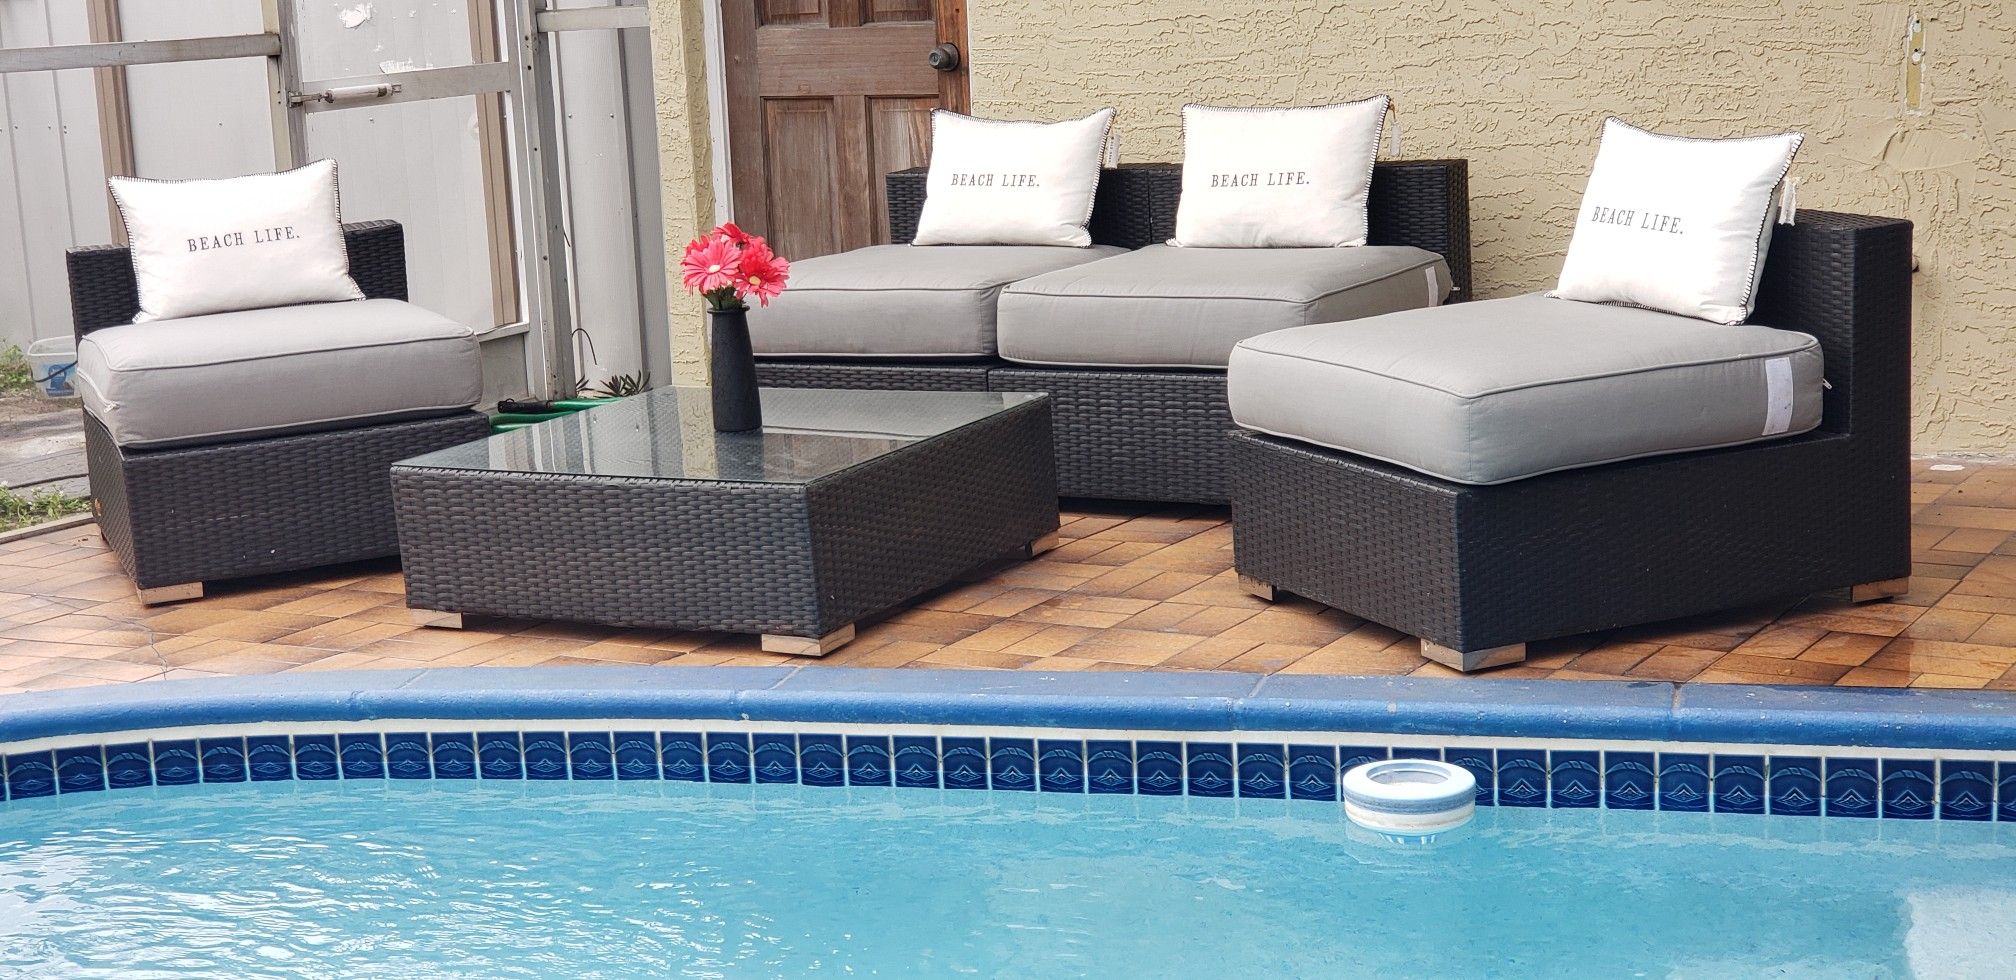 Outdoor patio furniture/outdoor patio set/outdoor patio sectional/patio chairs/outdoor seatings/juego se patio/muebles de patio